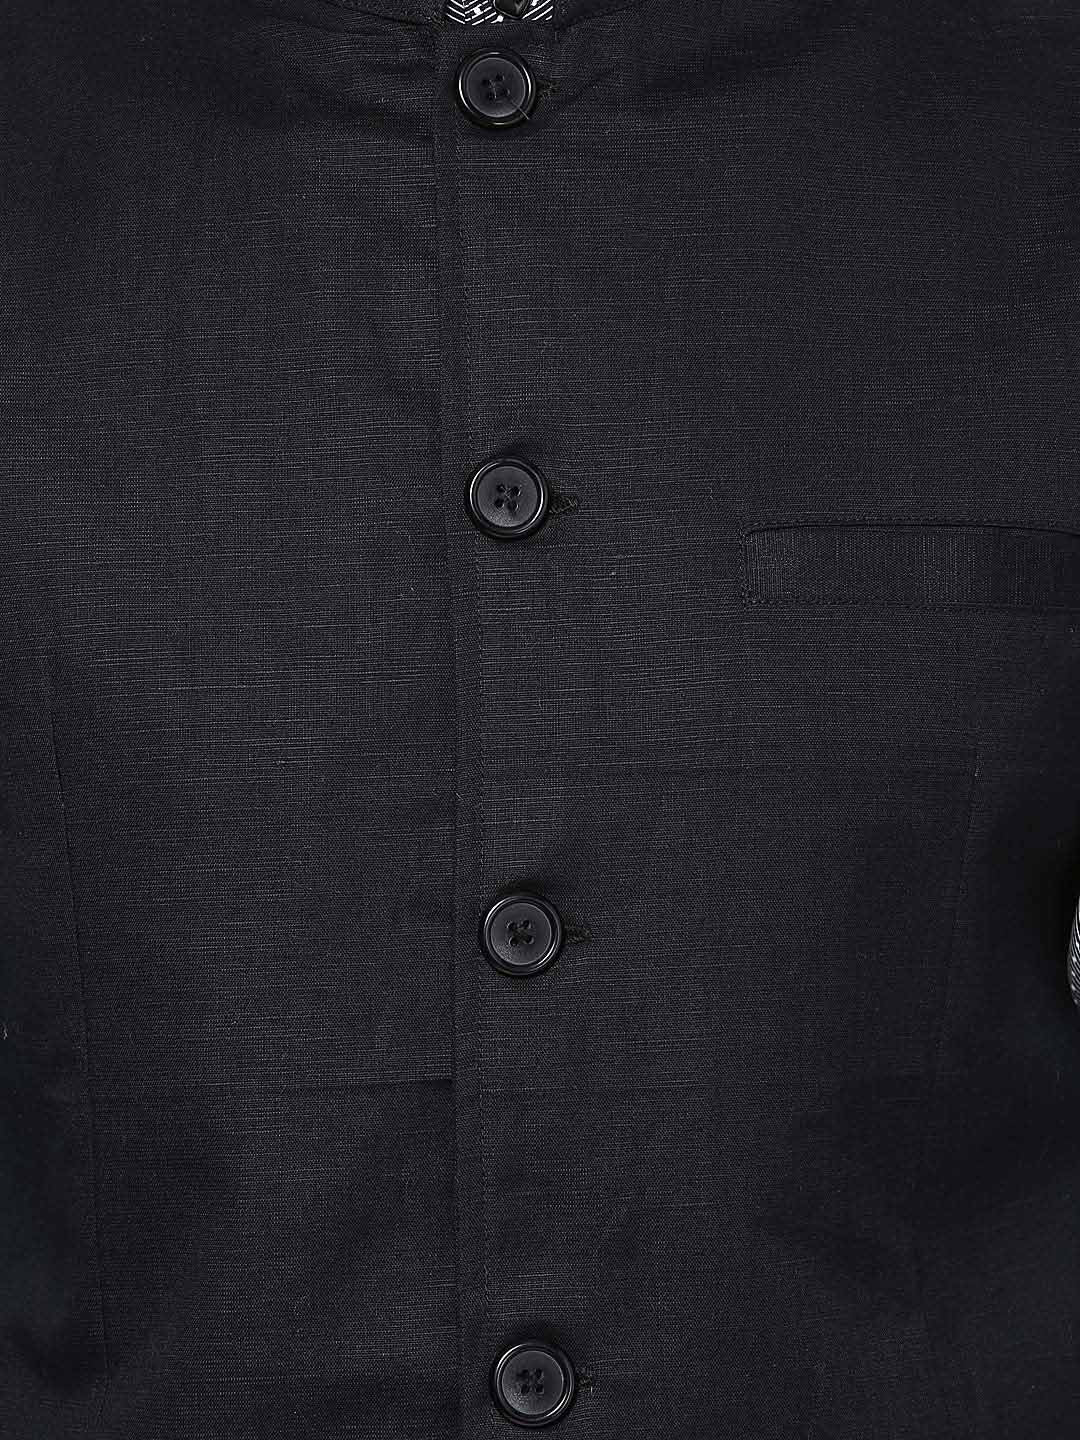 Men's Black Linen Blend Nehru Jacket  - Final Clearance Sale